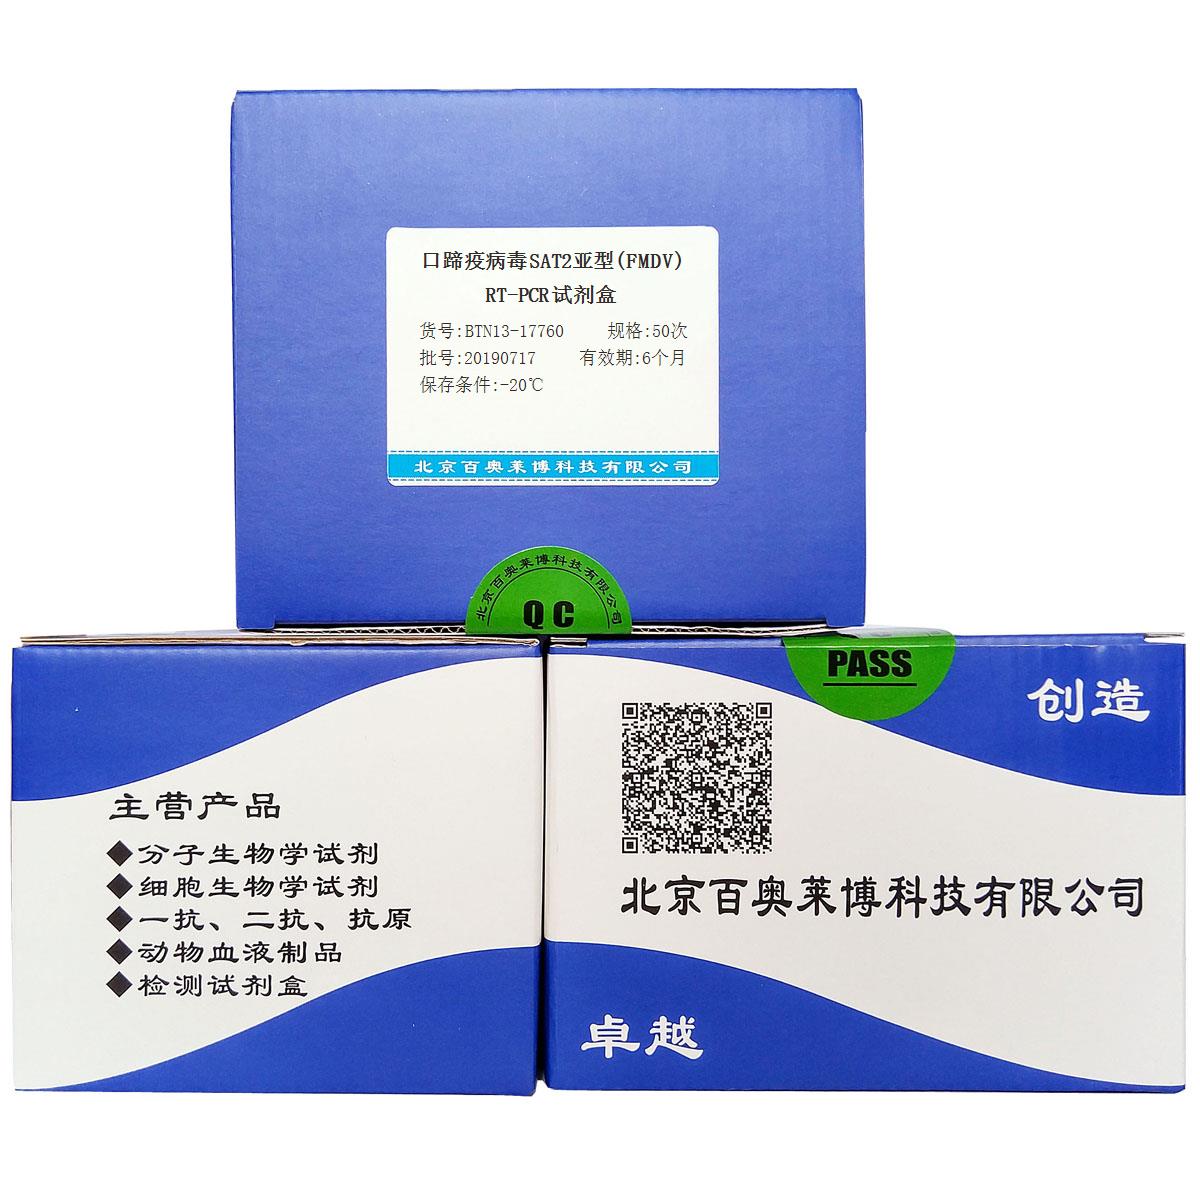 口蹄疫病毒SAT2亚型(FMDV)RT-PCR试剂盒